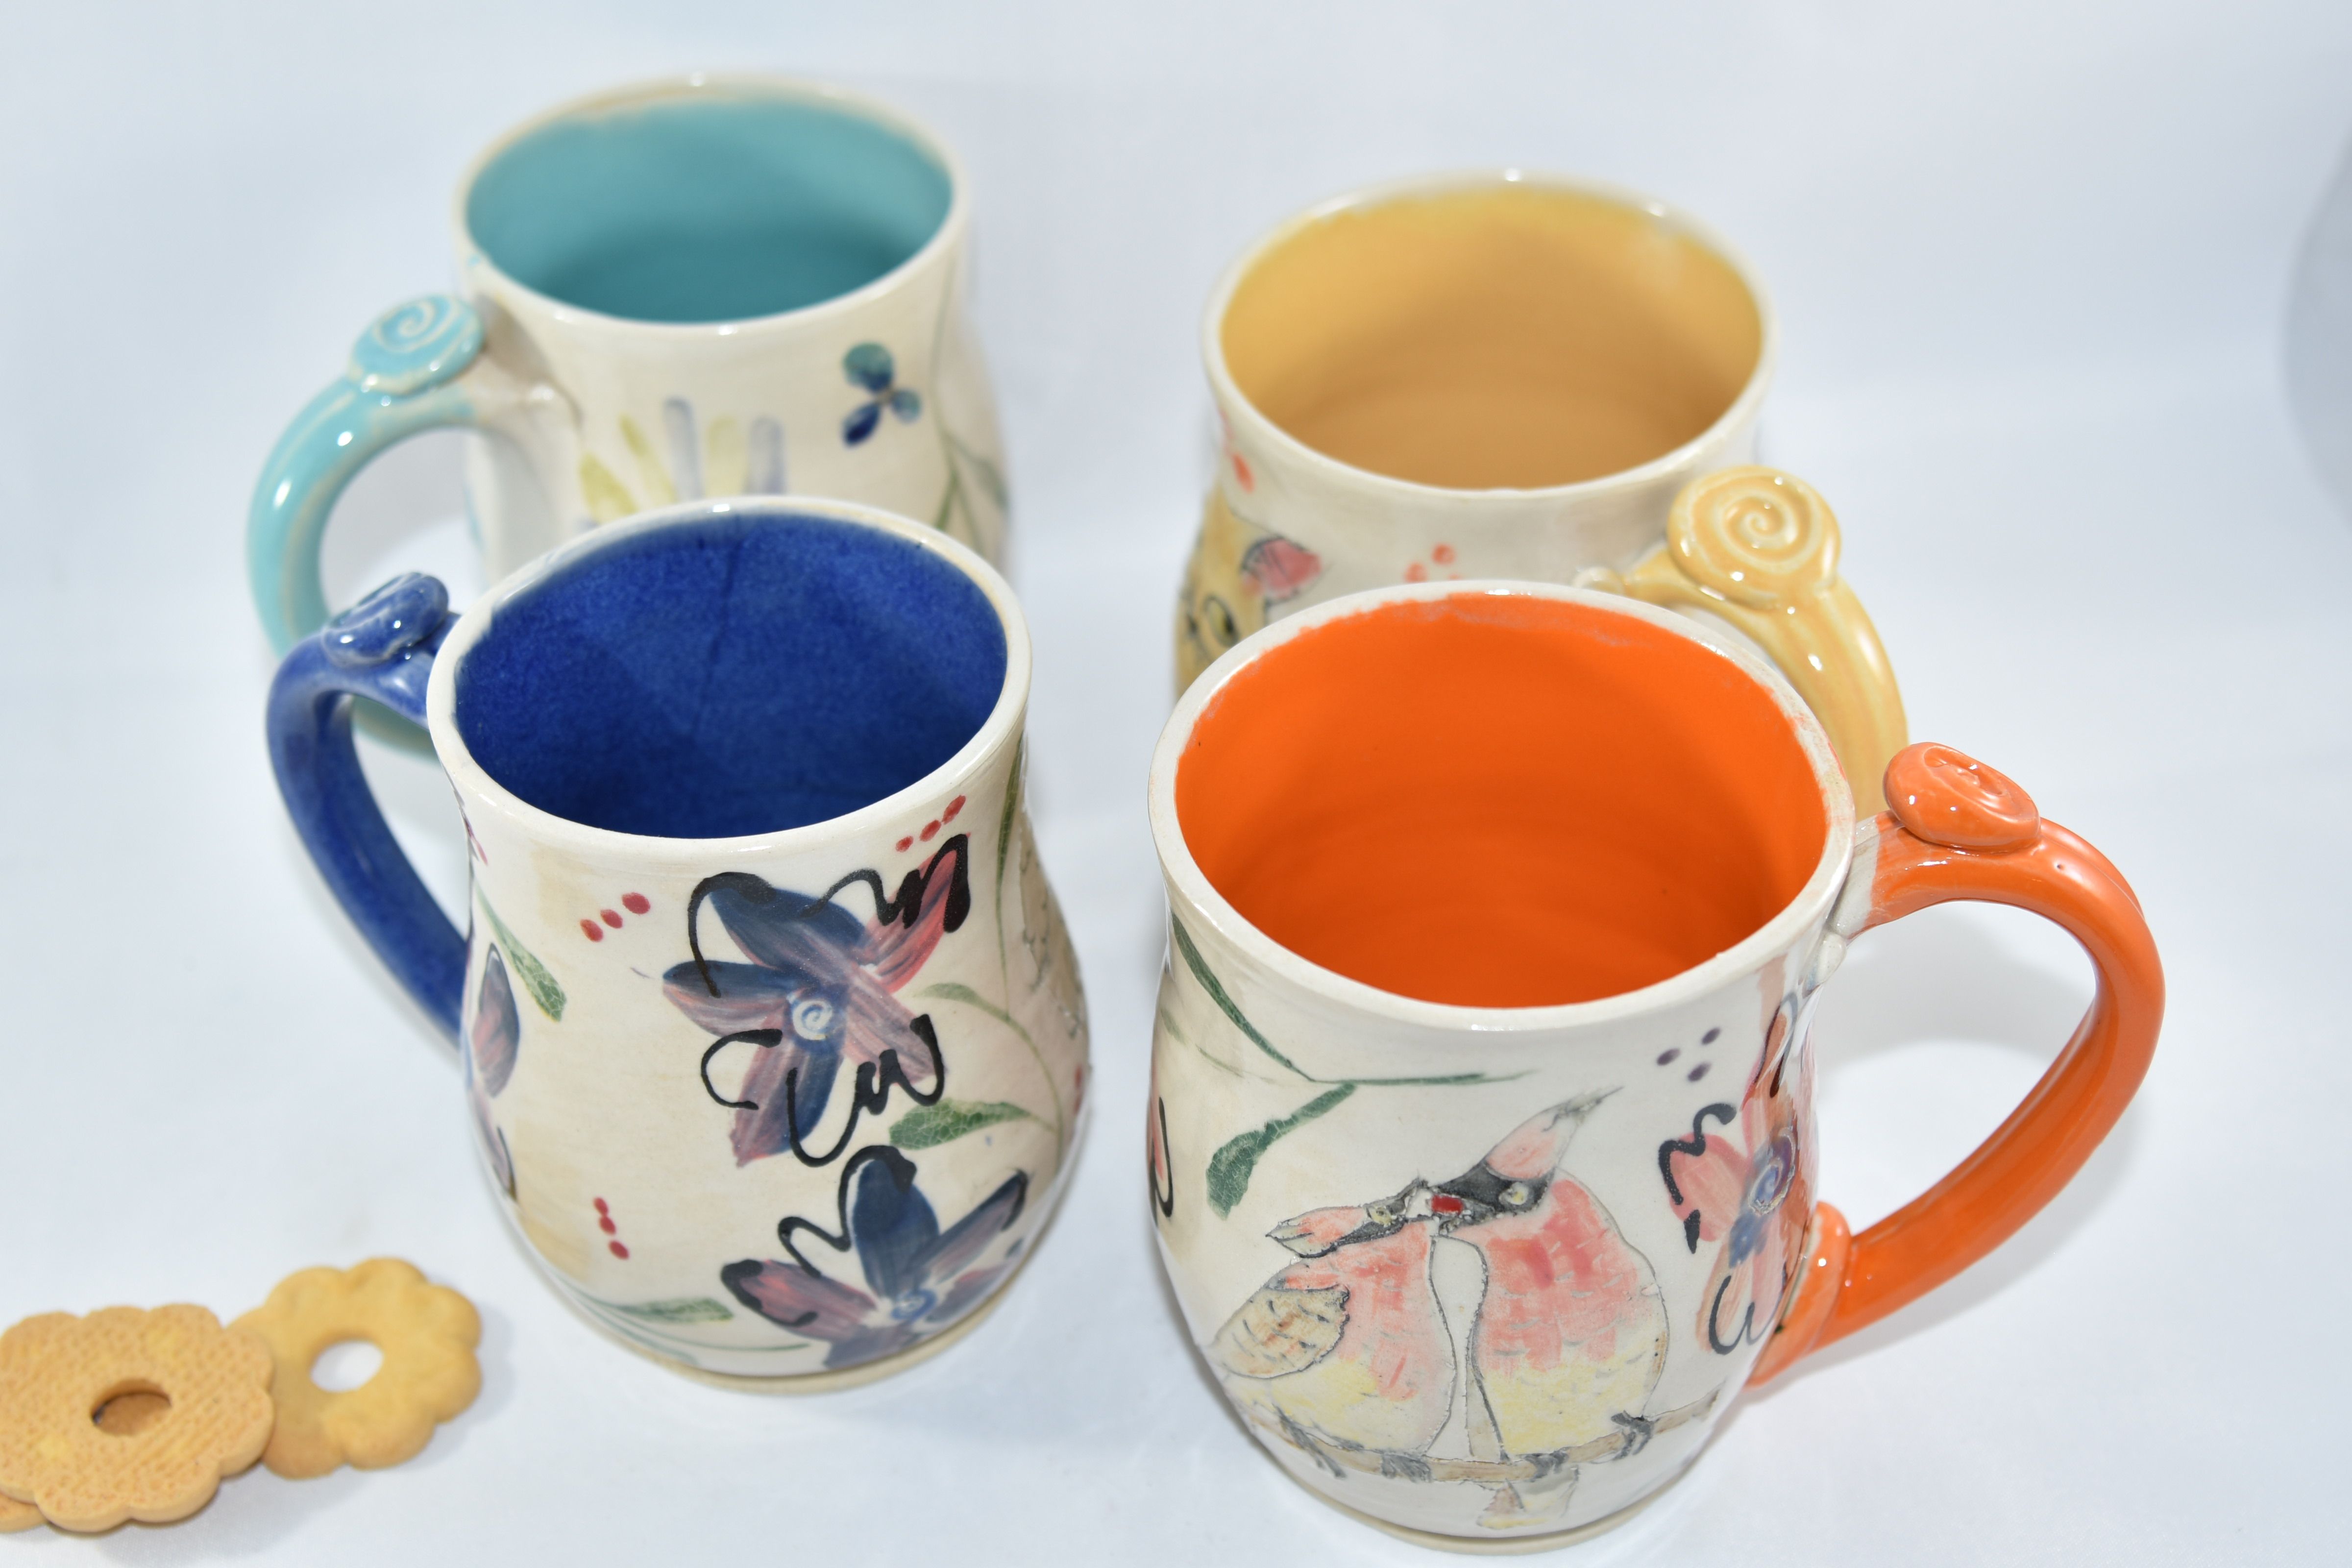 Colorful Pottery Mug, Tea Mug, Coffee Mug, Ceramic Mug, Handmade Ceramic Cup,  Christmas Gift, Coffee Cup, Modern Mug, Coffee Lover Gift 